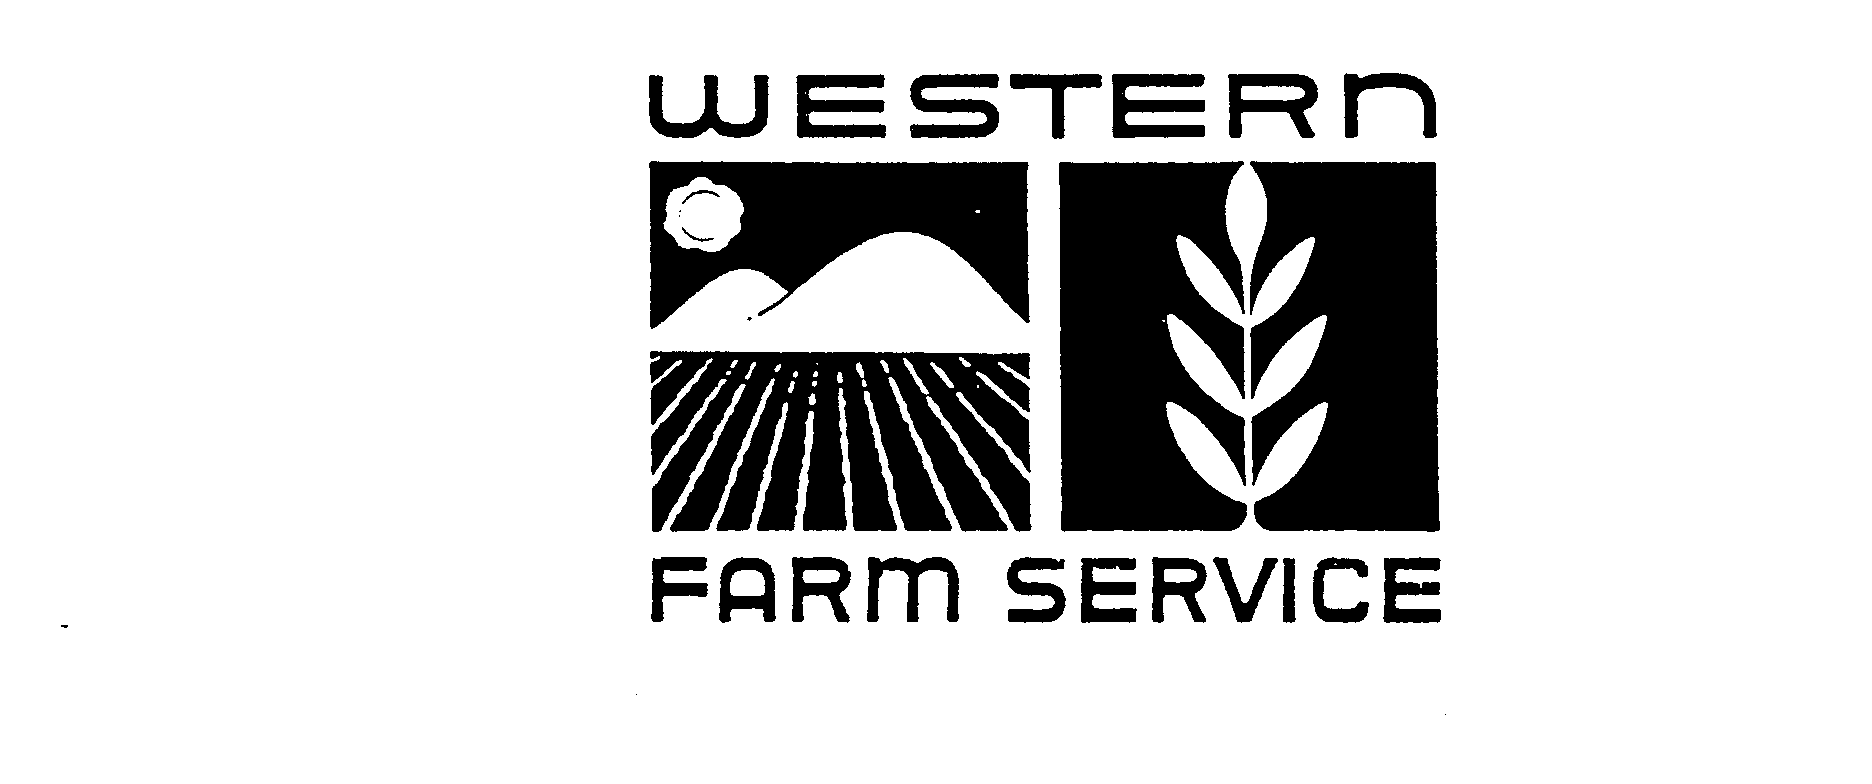  WESTERN FARM SERVICE